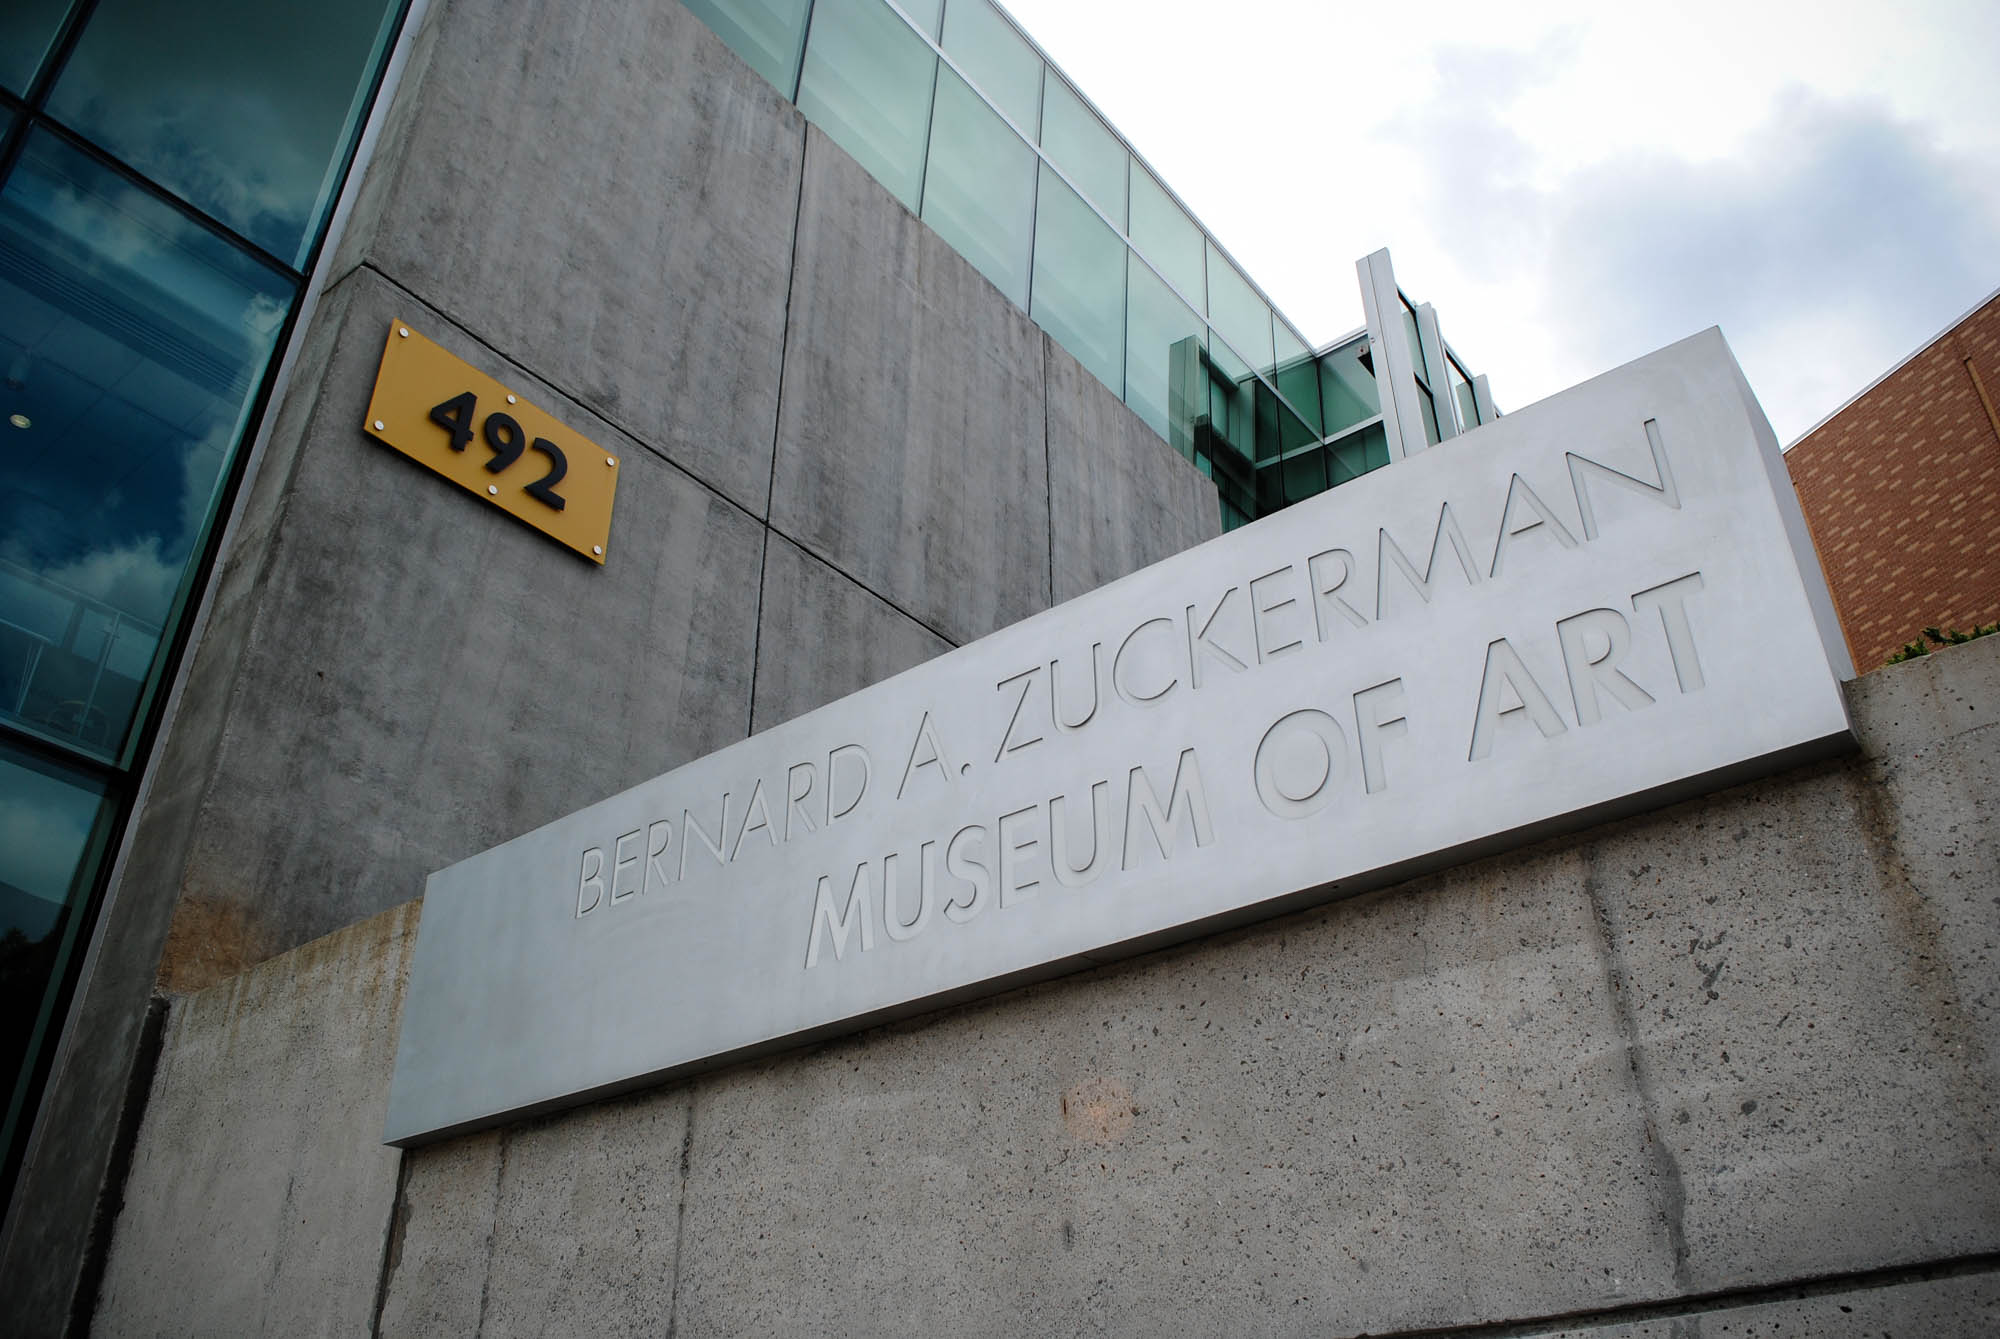 Zuckerman hosts supernatural exhibit